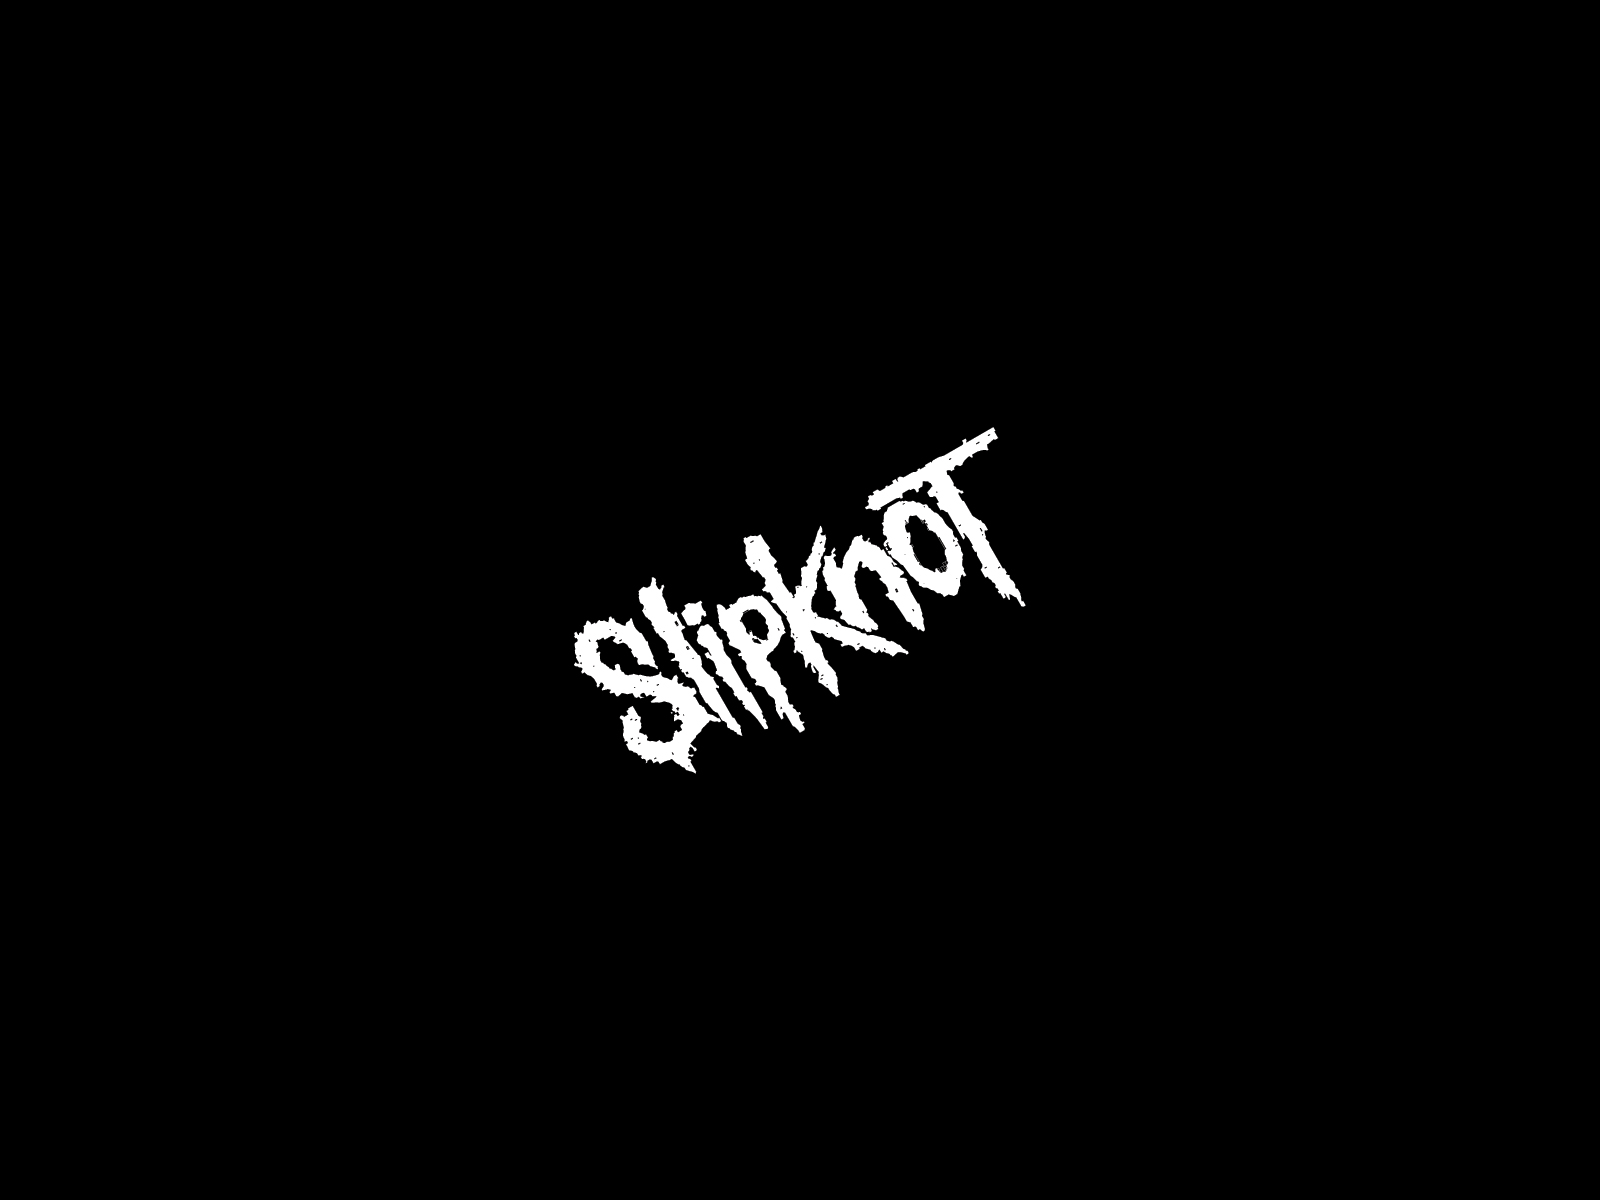 slipknot, industrial metal, nu metal, music, heavy metal